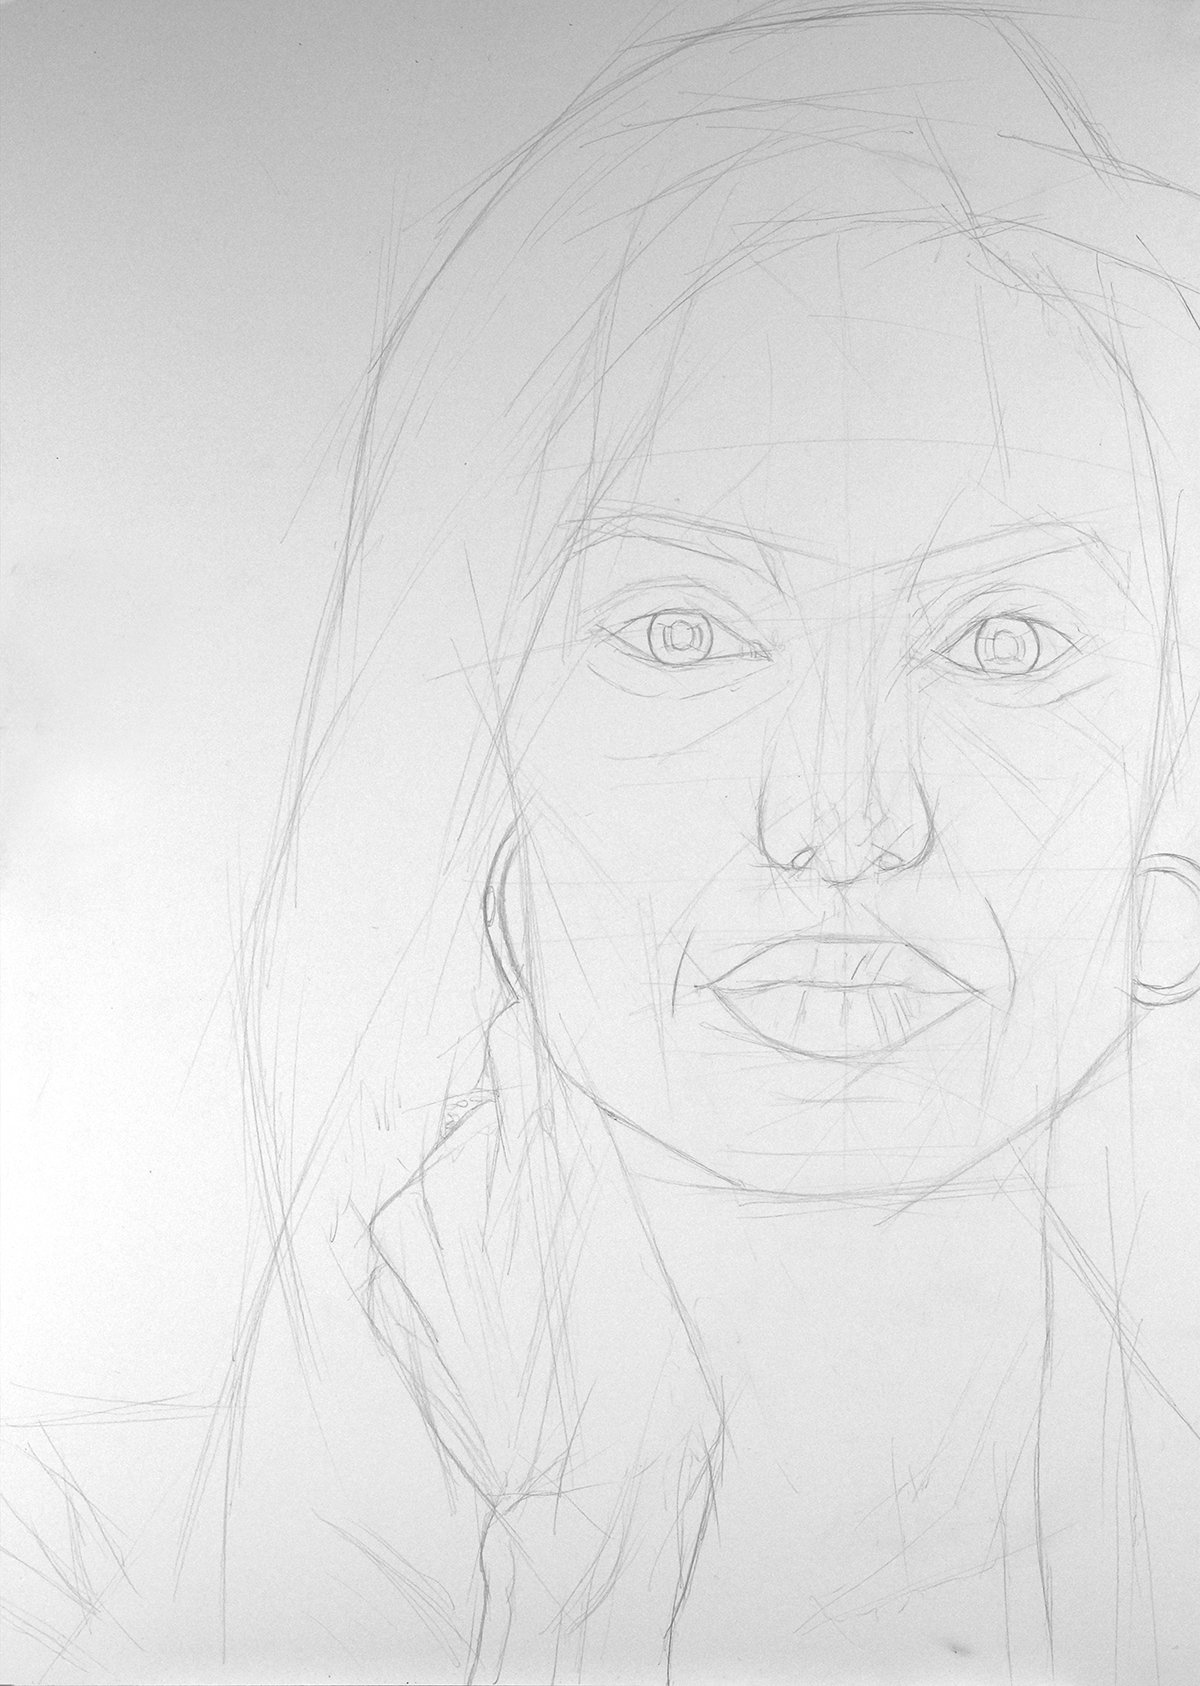 Angelina Jolie charcoal pencil draw hyperrealism Carboncino matita disegno illustrazione iperrealismo RITRATTO portrait